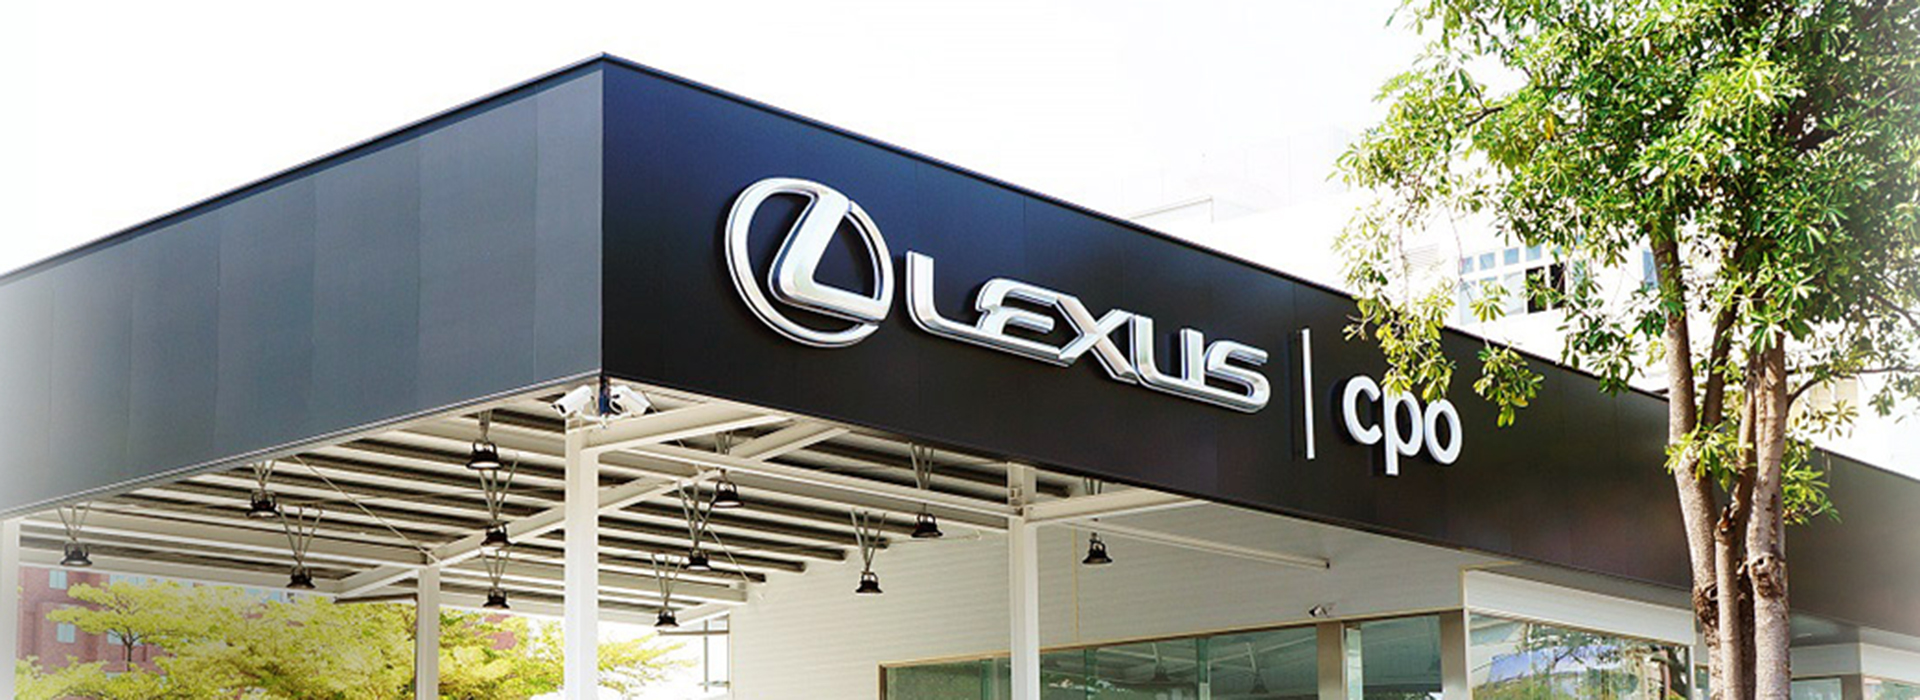 Lexus Cpo 士林&中和所 國都原廠認證中古車